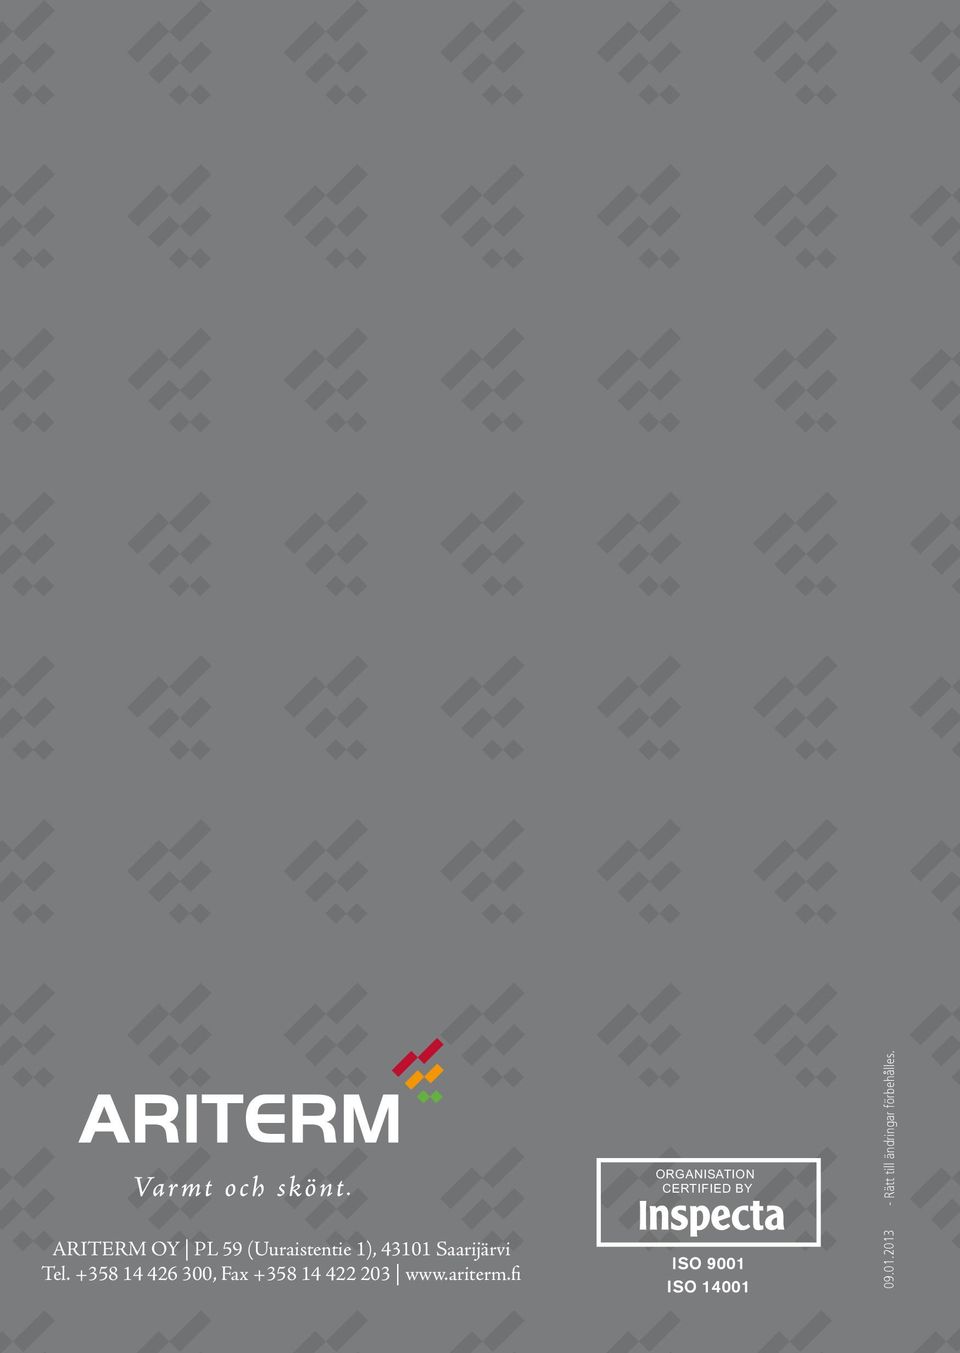 ARITERM OY PL 59 (Uuraistentie 1), 43101